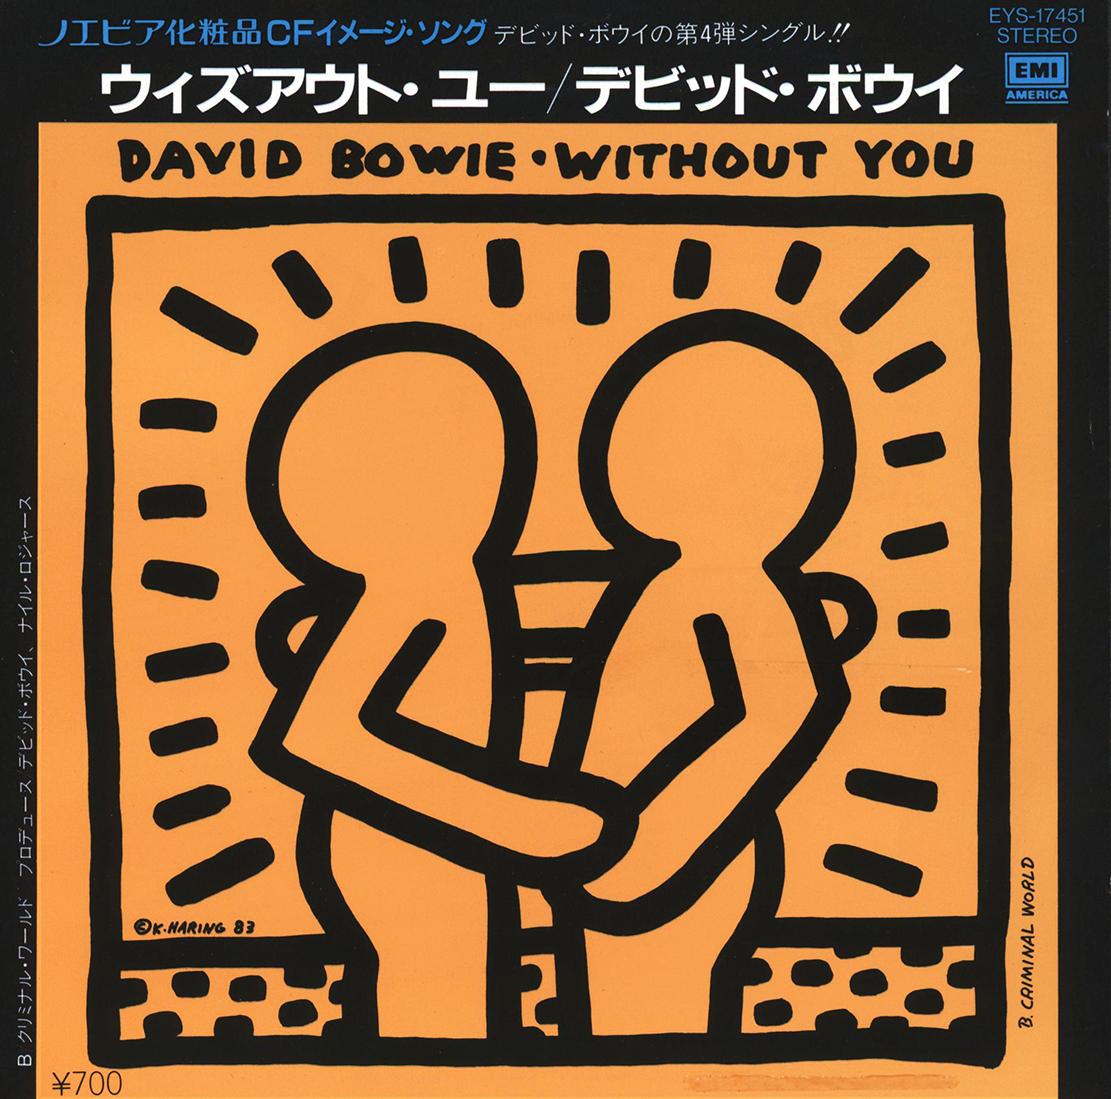 Keith Haring record art 1983 :
David BOWIE "Without You" Une pochette vinyle rare et très recherchée avec une œuvre originale de Keith Haring. Rare Japon 1er Pressage 1983 accompagné de son album disque original :

Médium : Lithographie Off-Set.